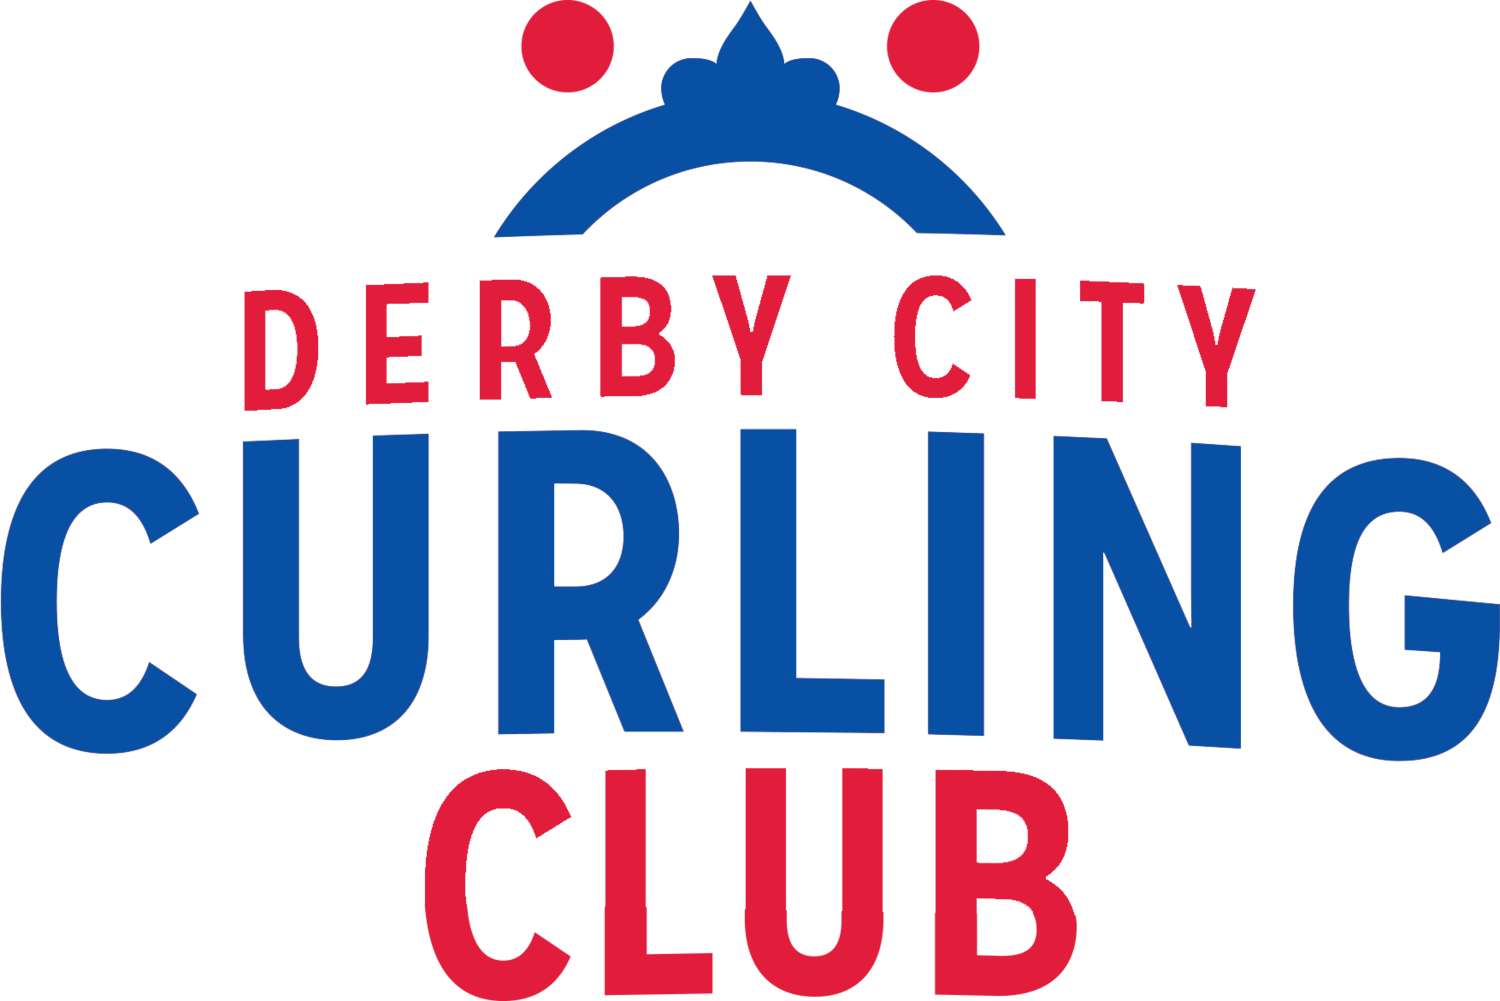 Derby City Curling Club